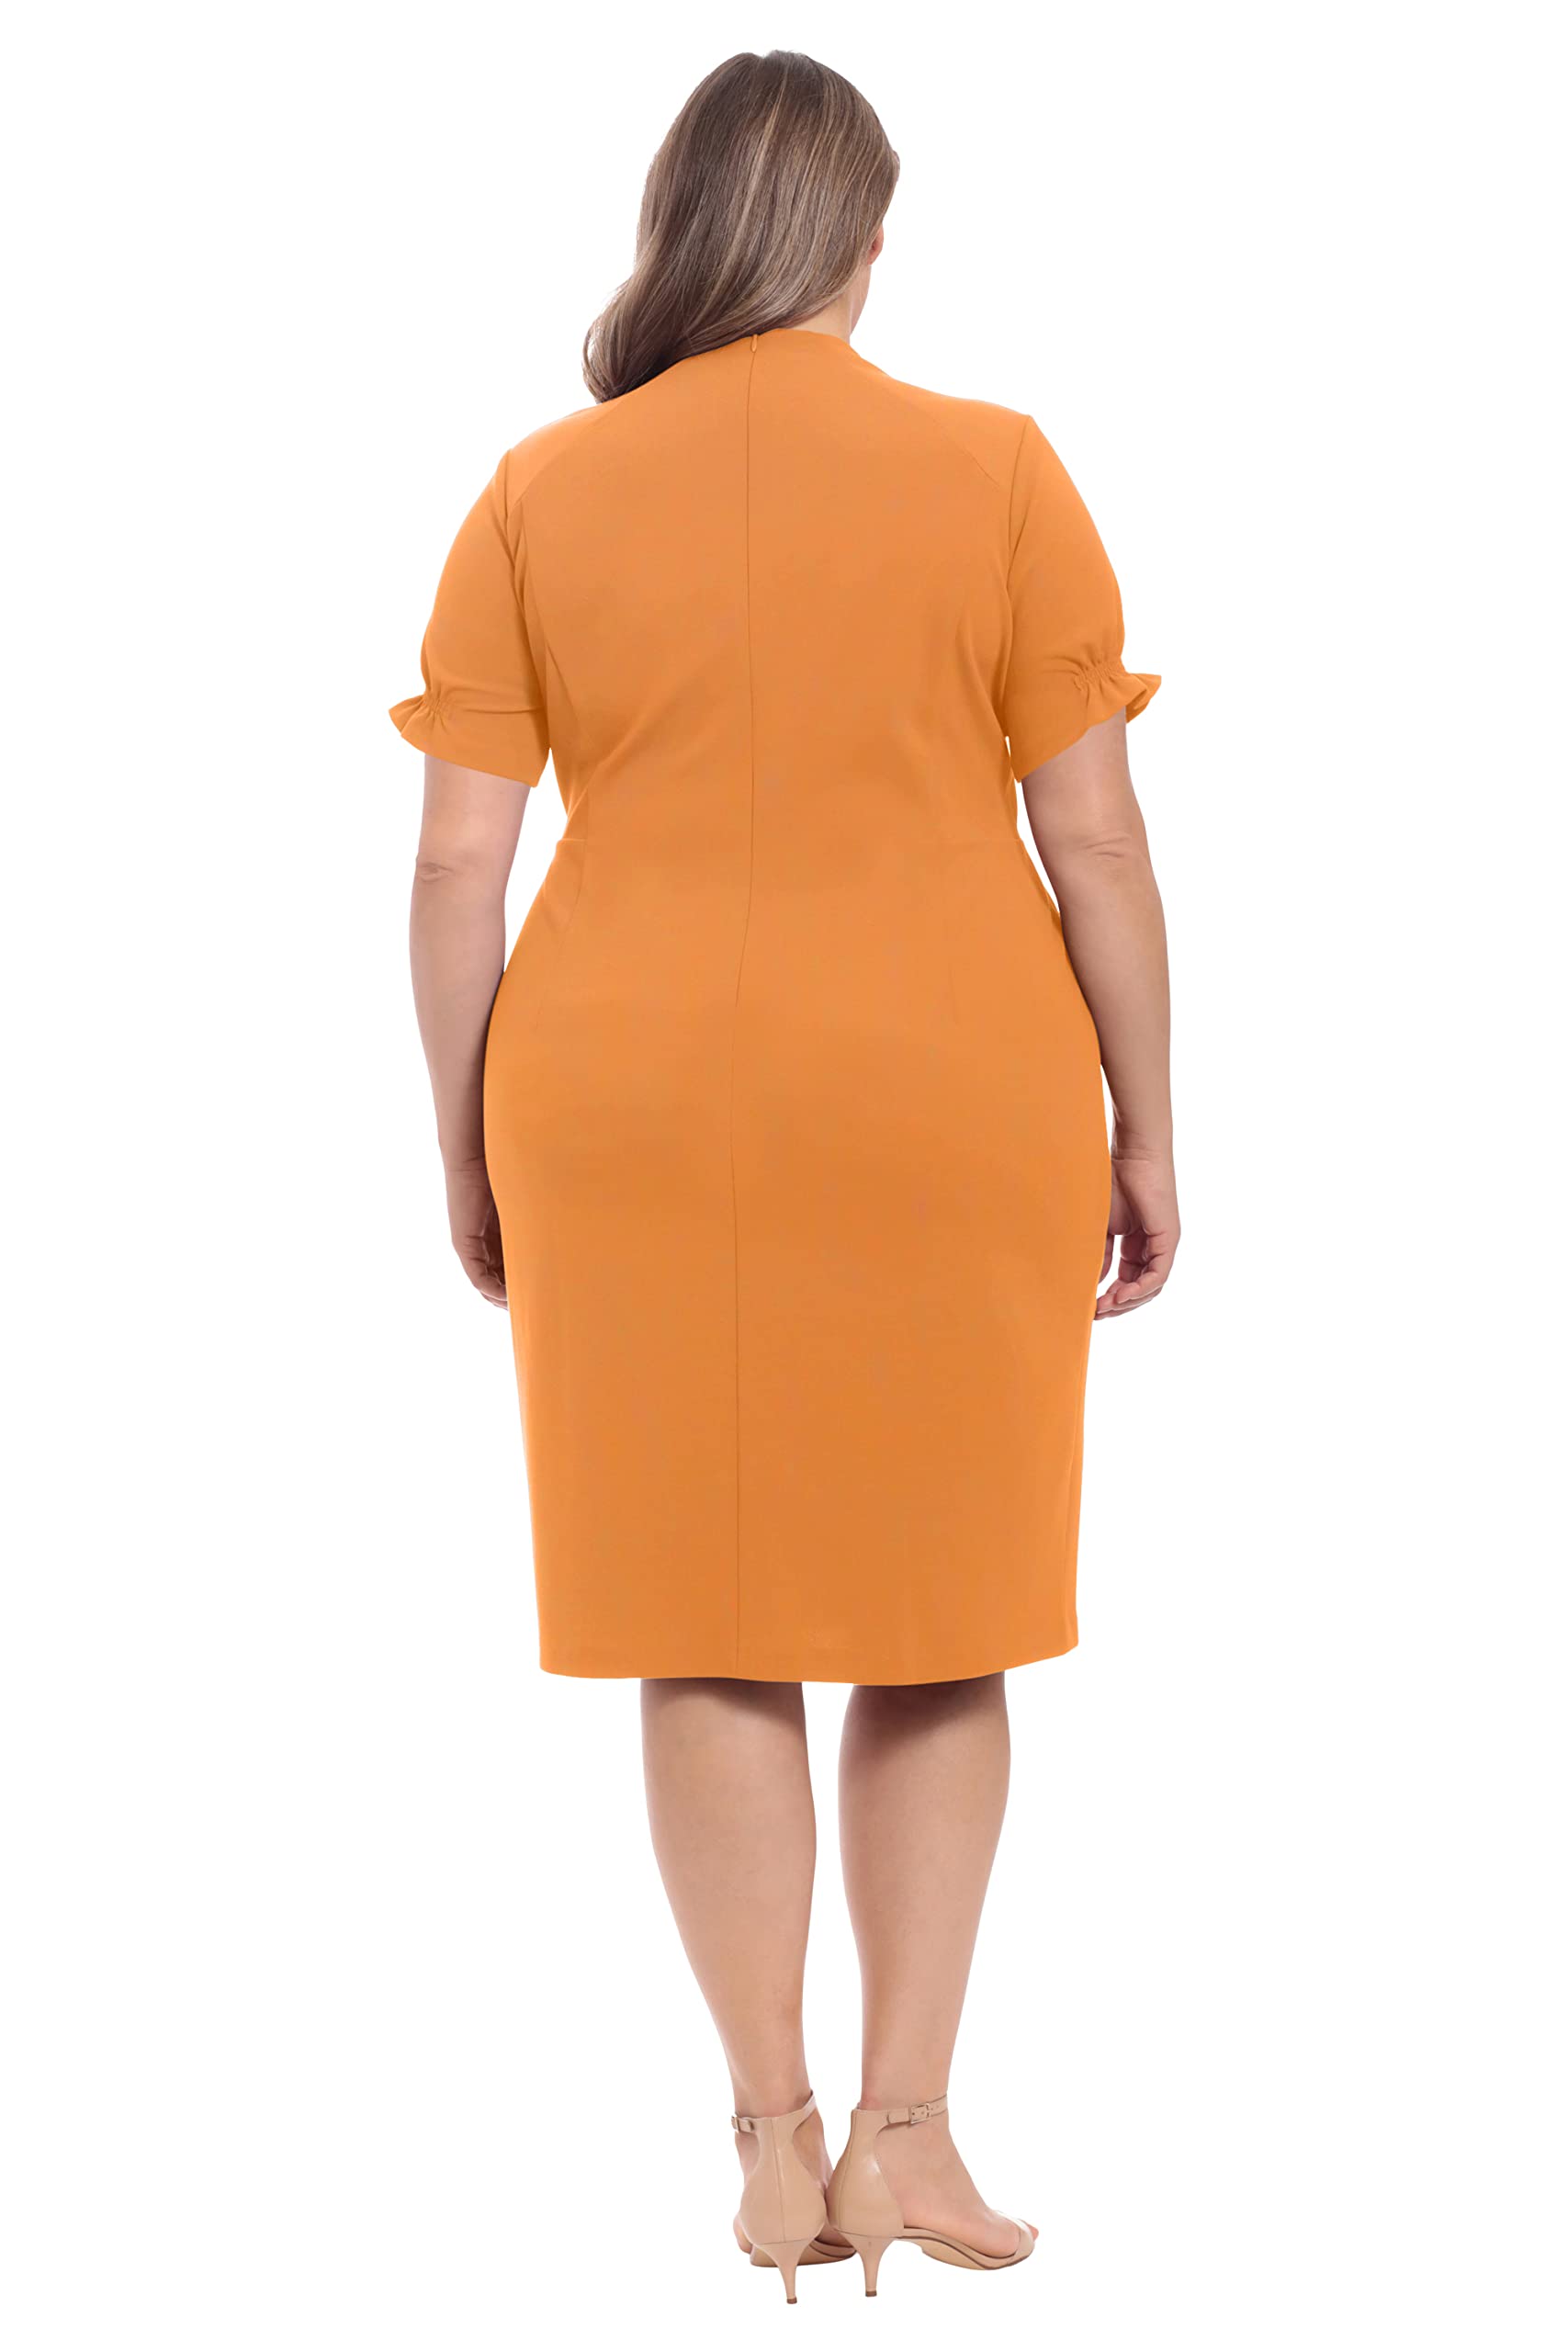 London Times Women's Petite Open Neck Puff Feminine Sleeve Seamed Flattering Sheath Dress